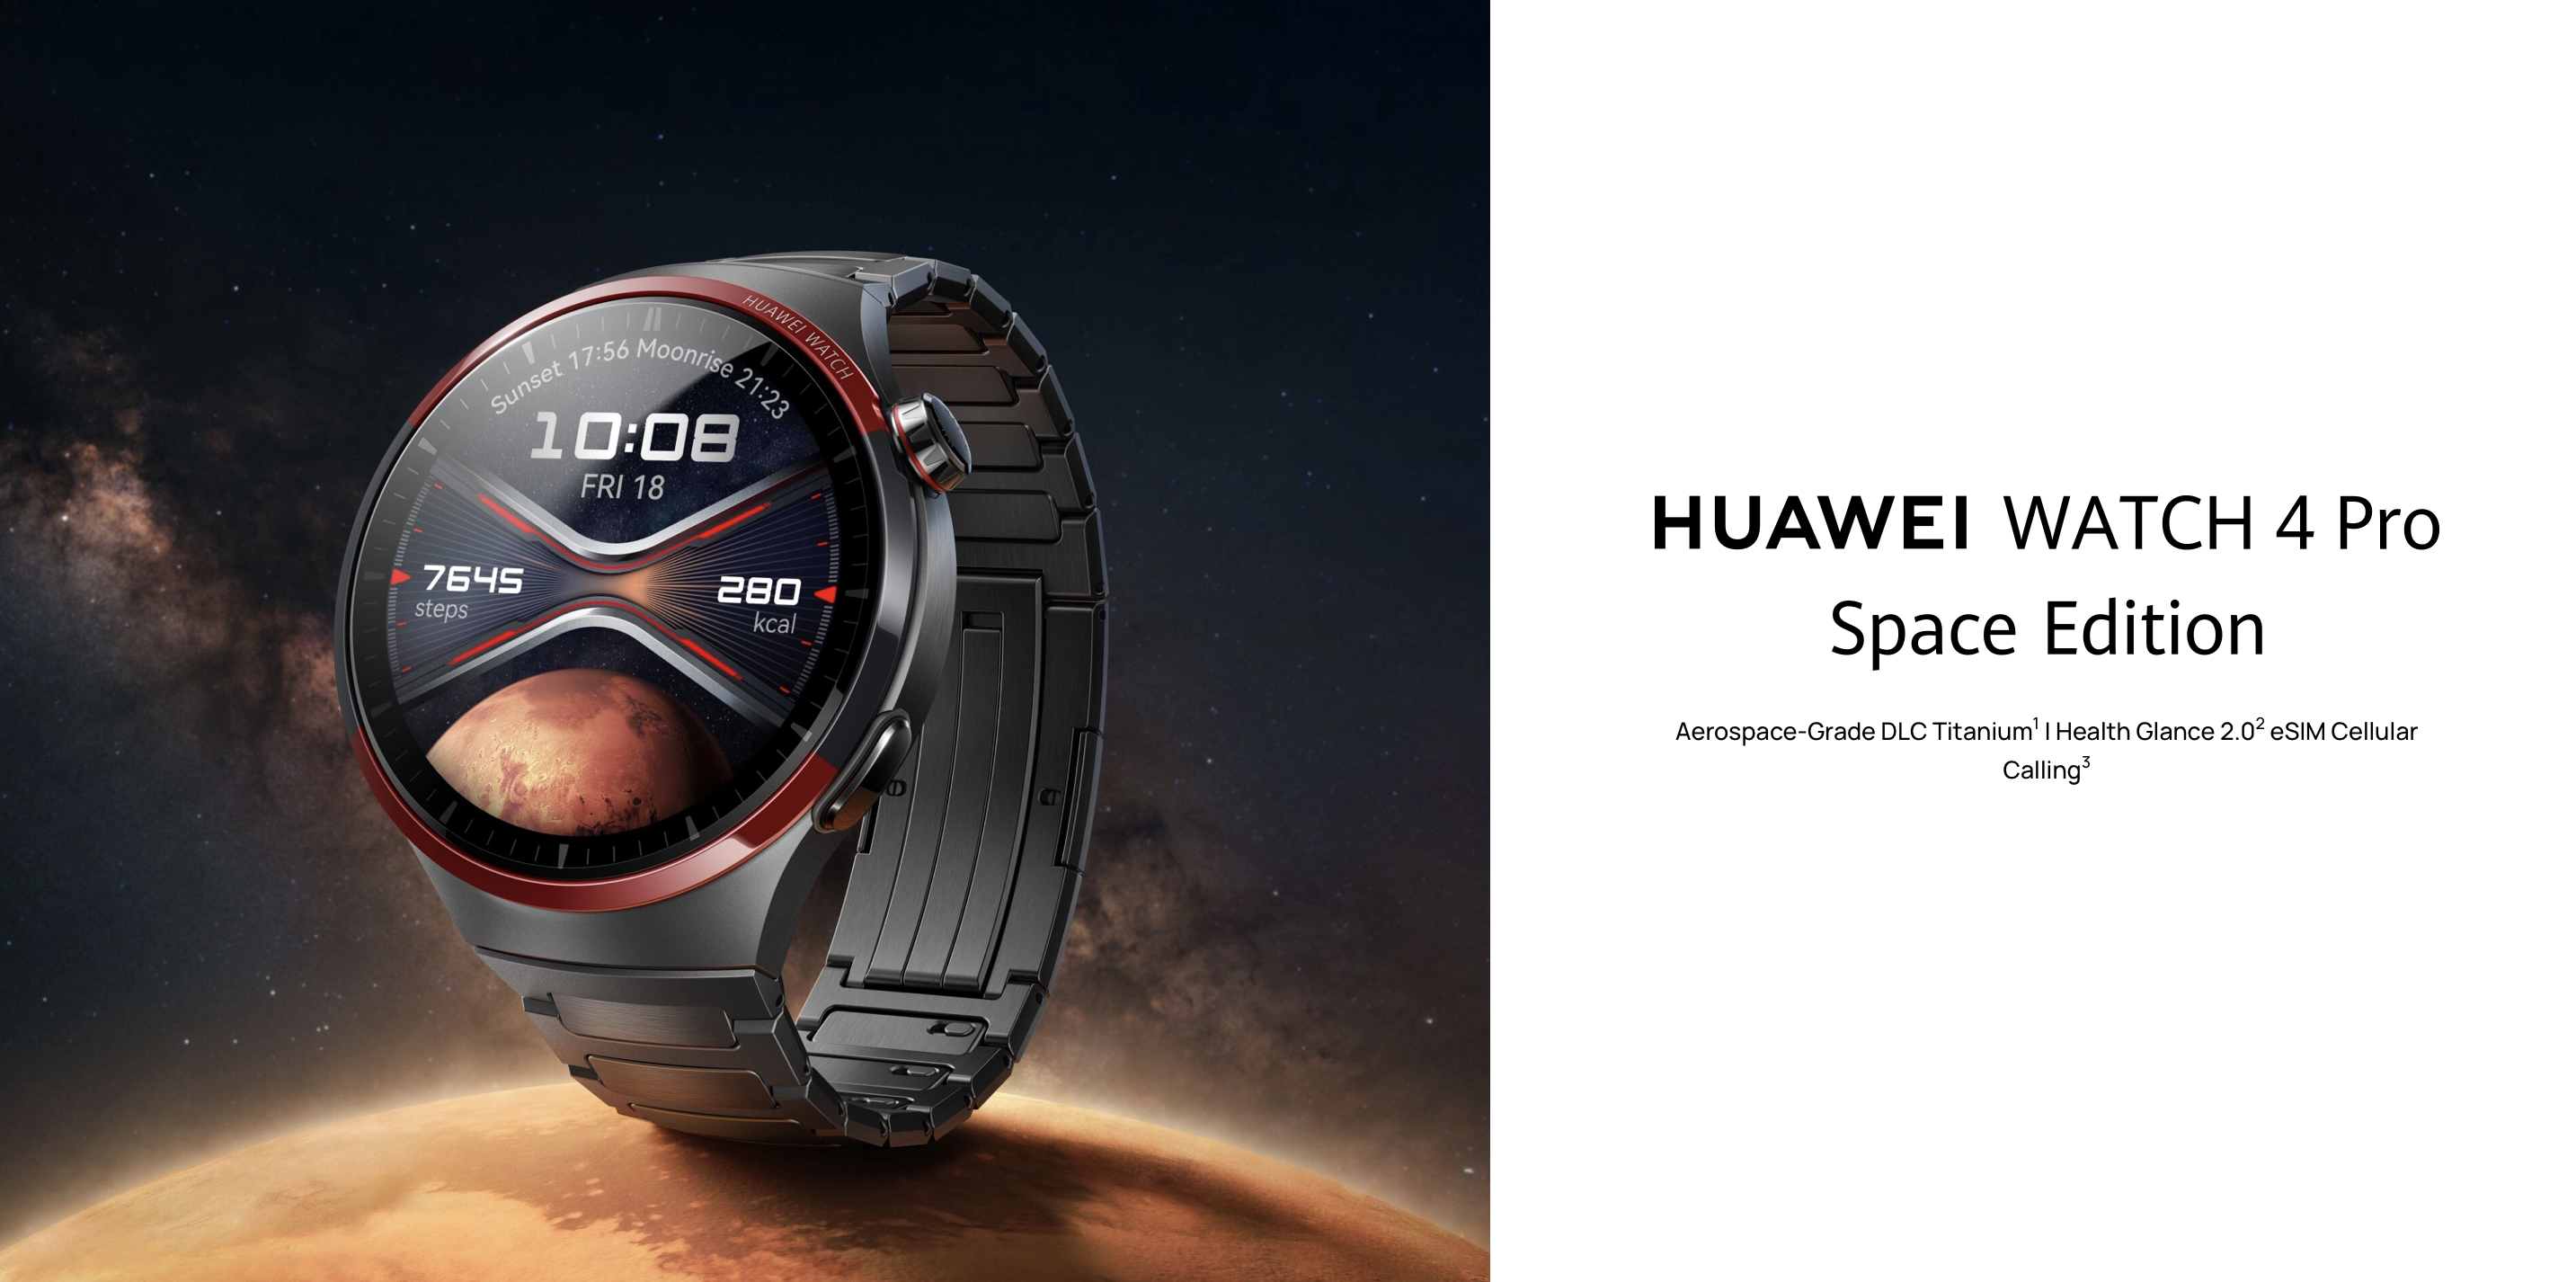 La Huawei Watch 4 Pro Space Edition, dotée d'un boîtier en titane, d'un verre saphir et d'un prix de 649 euros, a fait son entrée sur le marché mondial.